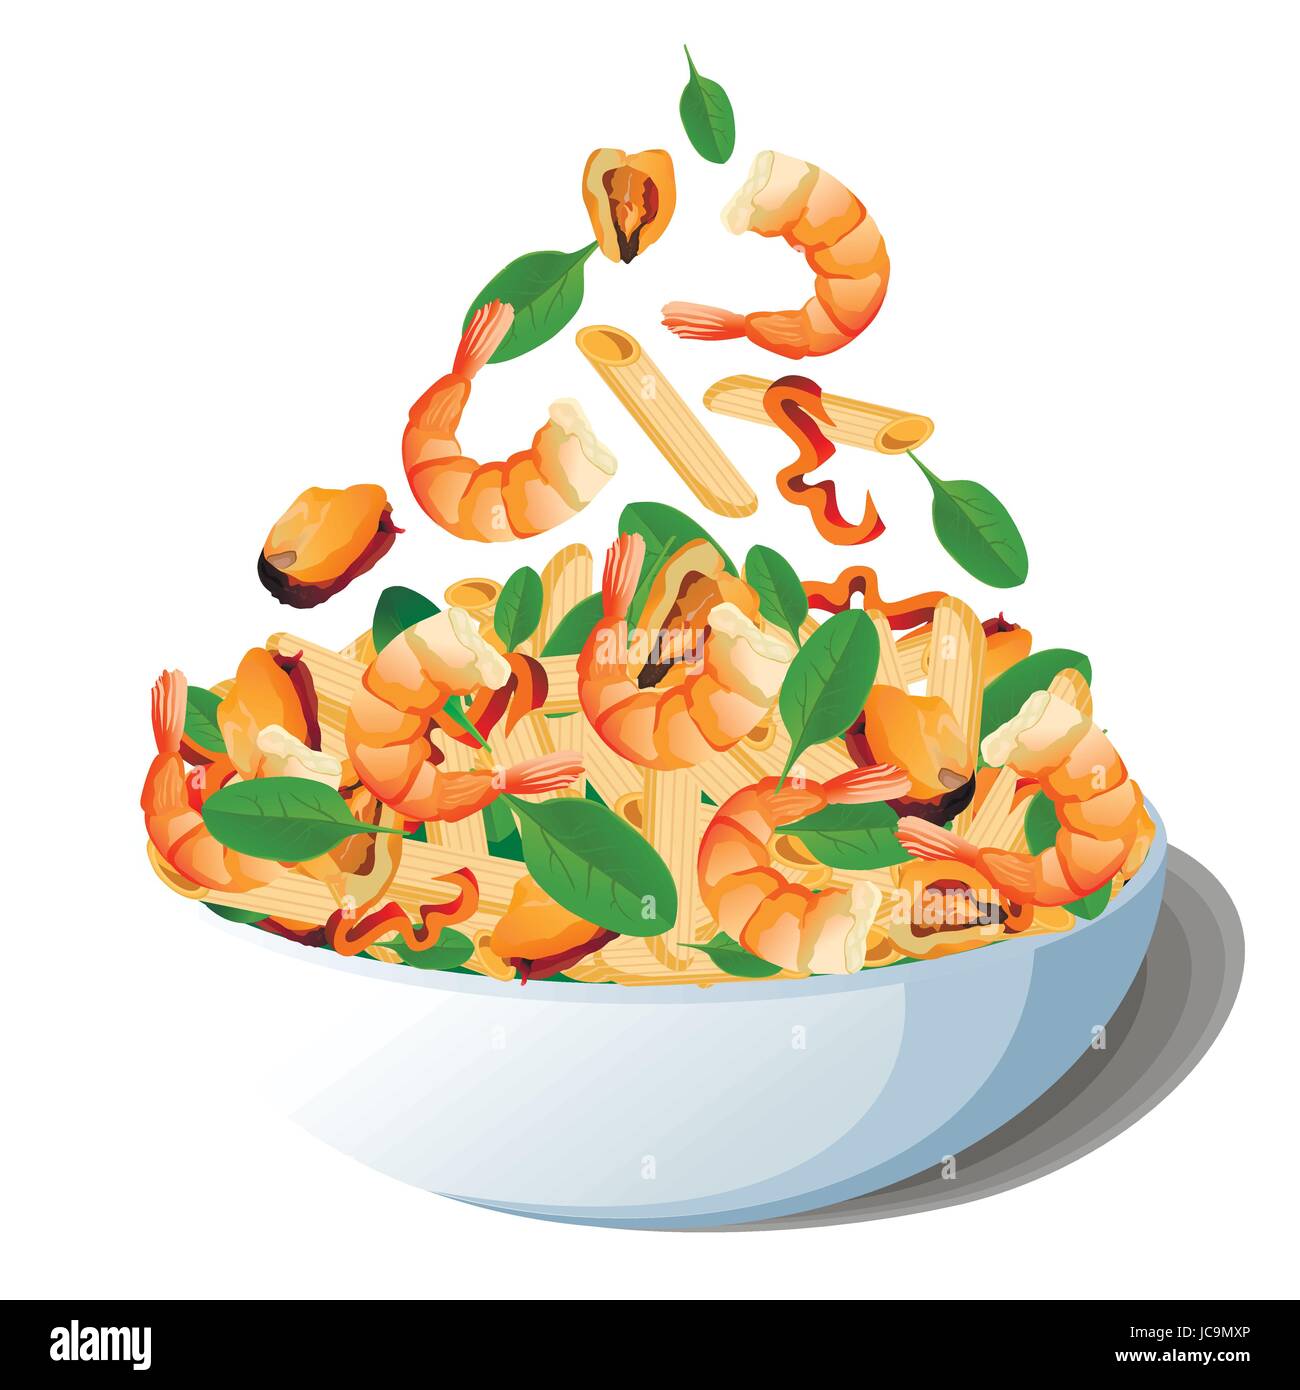 Pasta maccheroni penne con insalata di frutti di mare: i gamberetti o gamberoni, cozze, peperone baby spinaci, aceto nel recipiente. Colore del vettore di close-up vista superiore Illustrazione Vettoriale